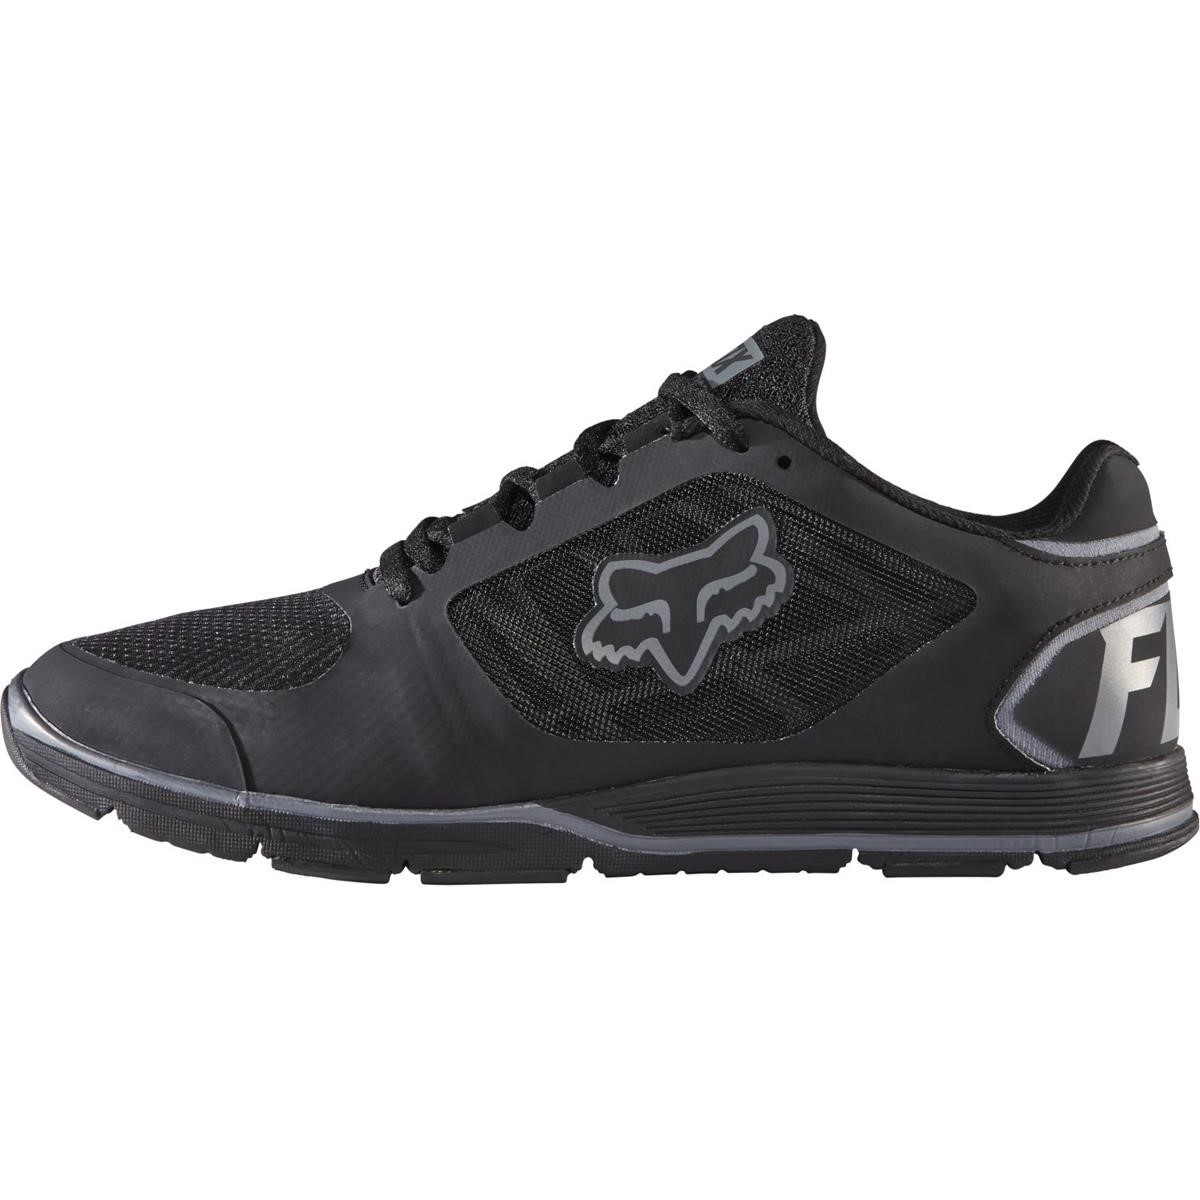 Fox Shoes Motion Evo Black/Charcoal